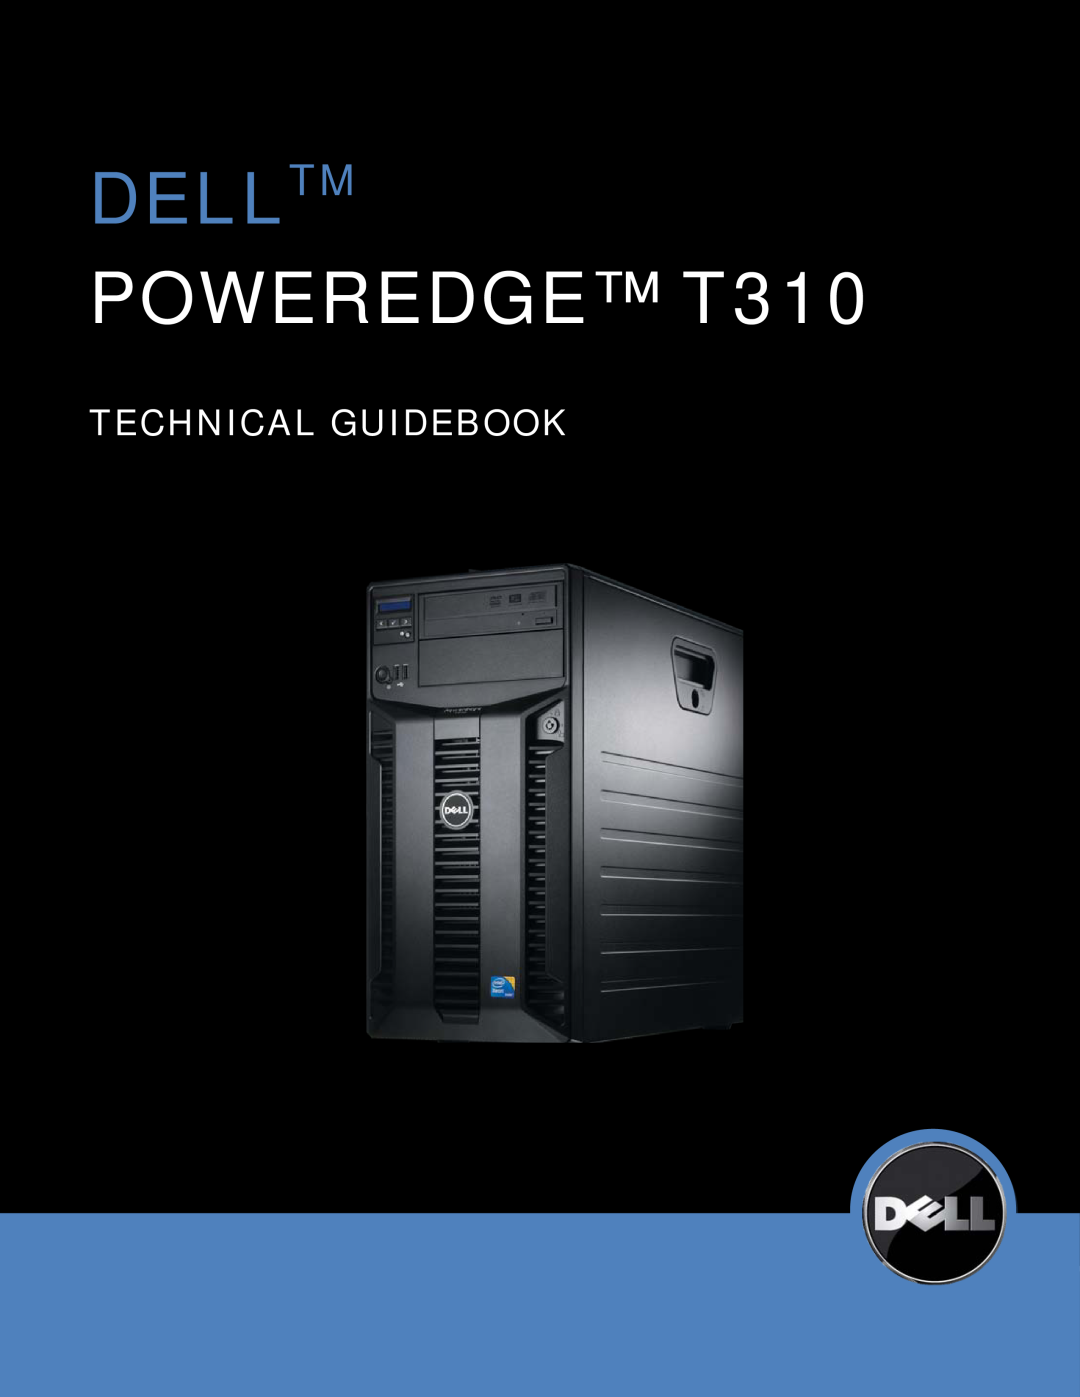 Dell manual Delltm, POWEREDGE T310, Technical Guidebook 